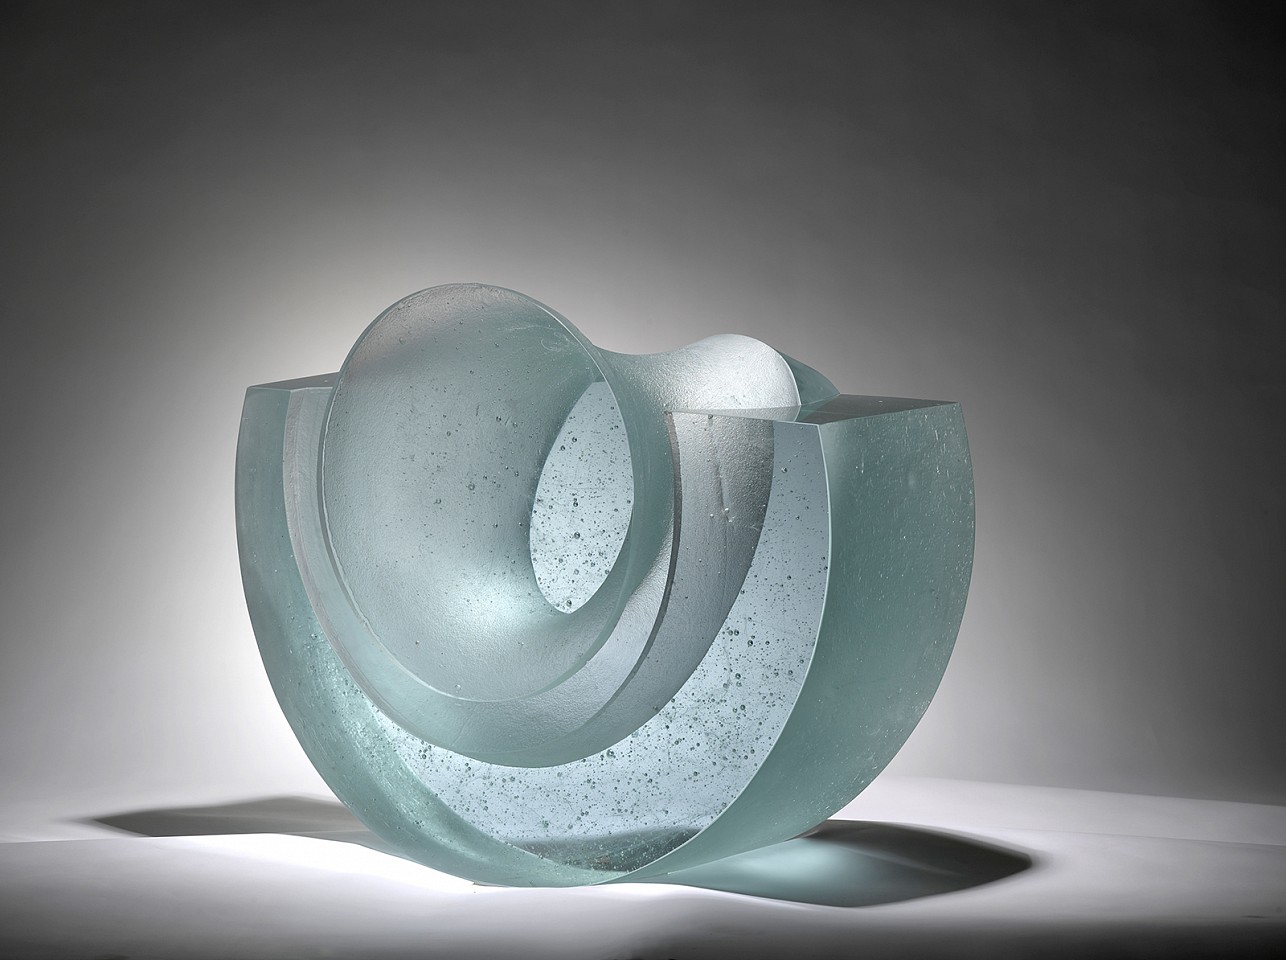 Stepan Pala, Cradle
2010, Glass